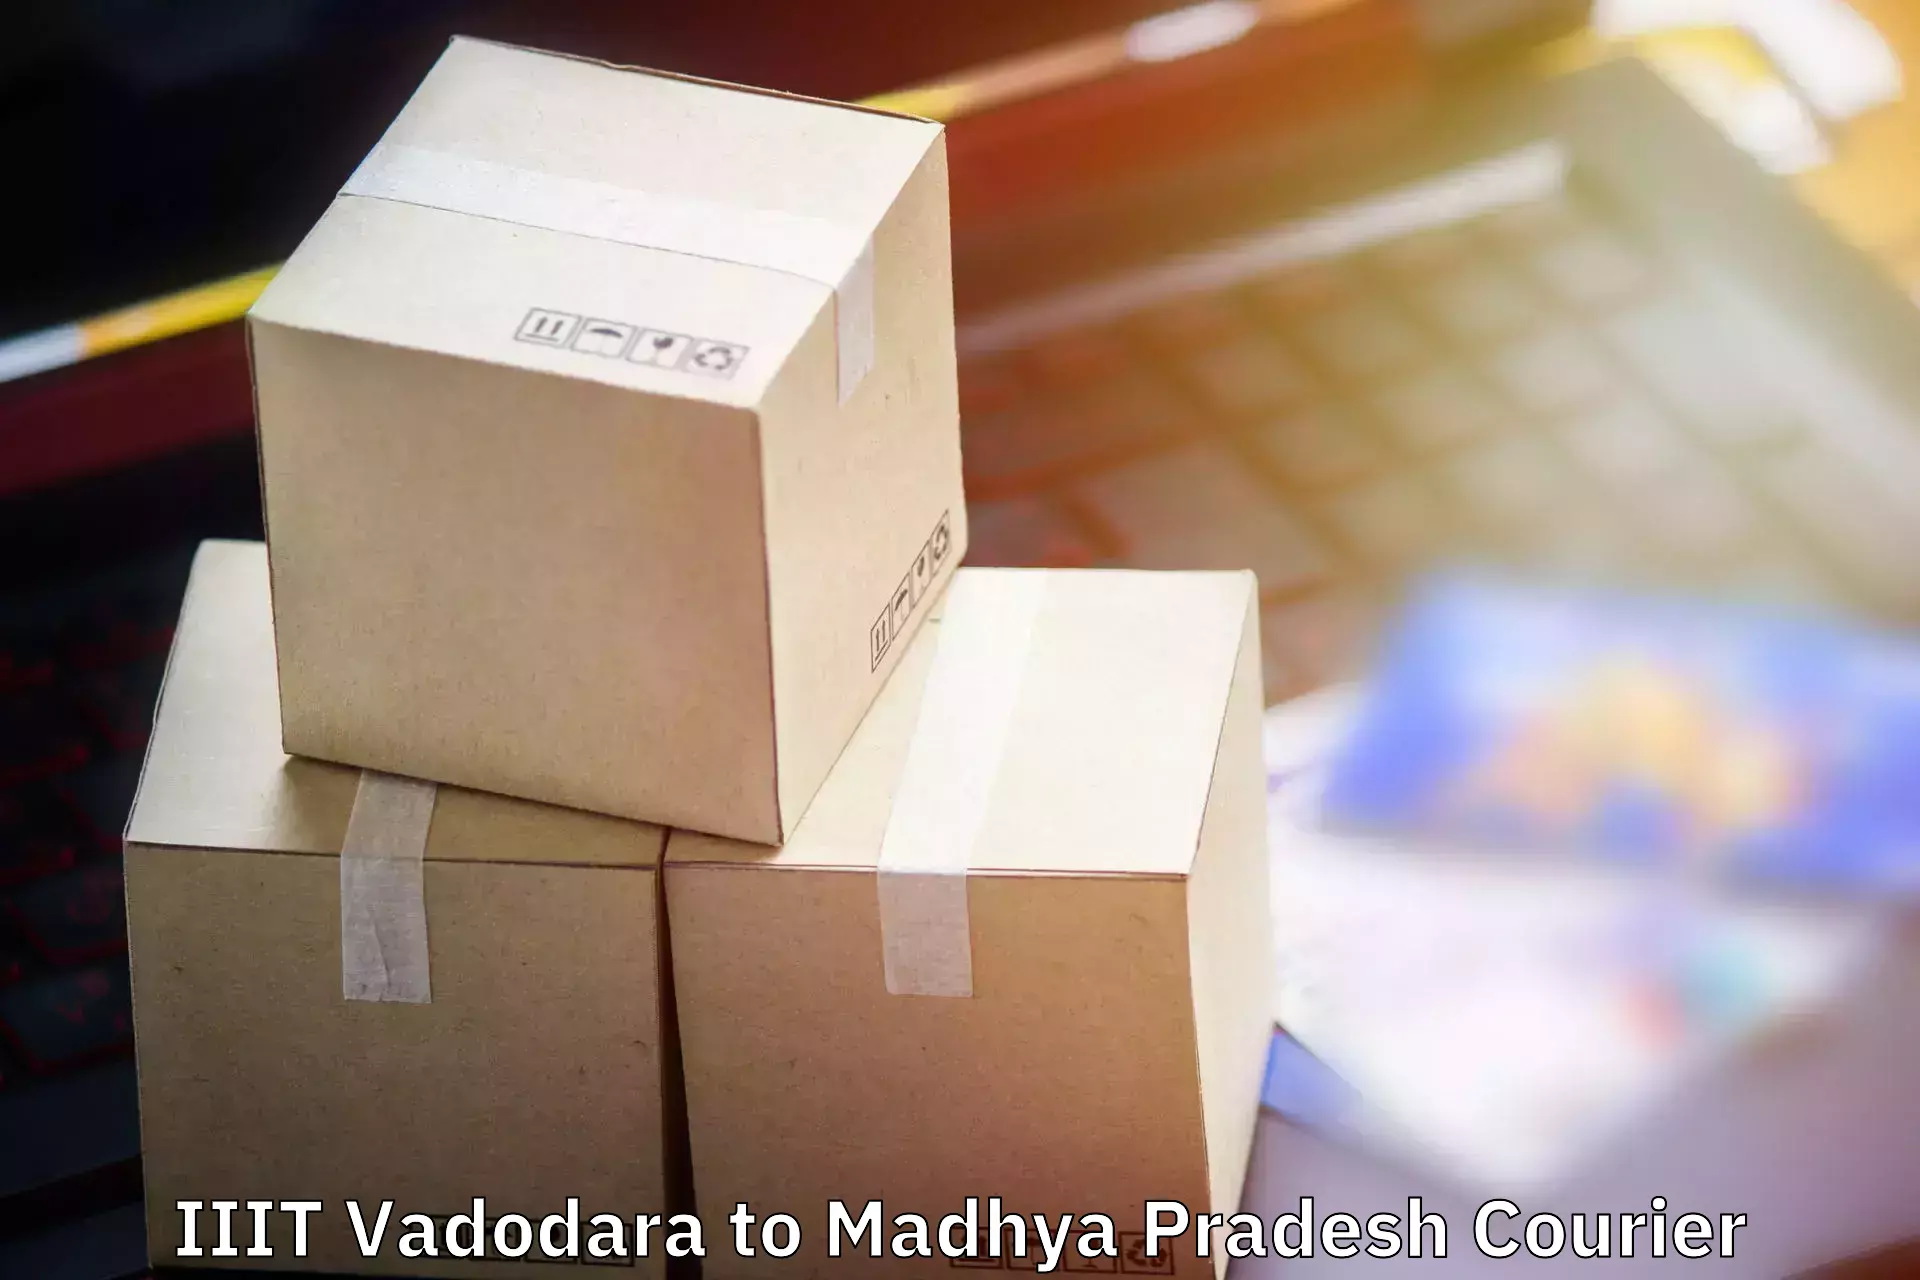 Personalized luggage shipping IIIT Vadodara to Chhindwara